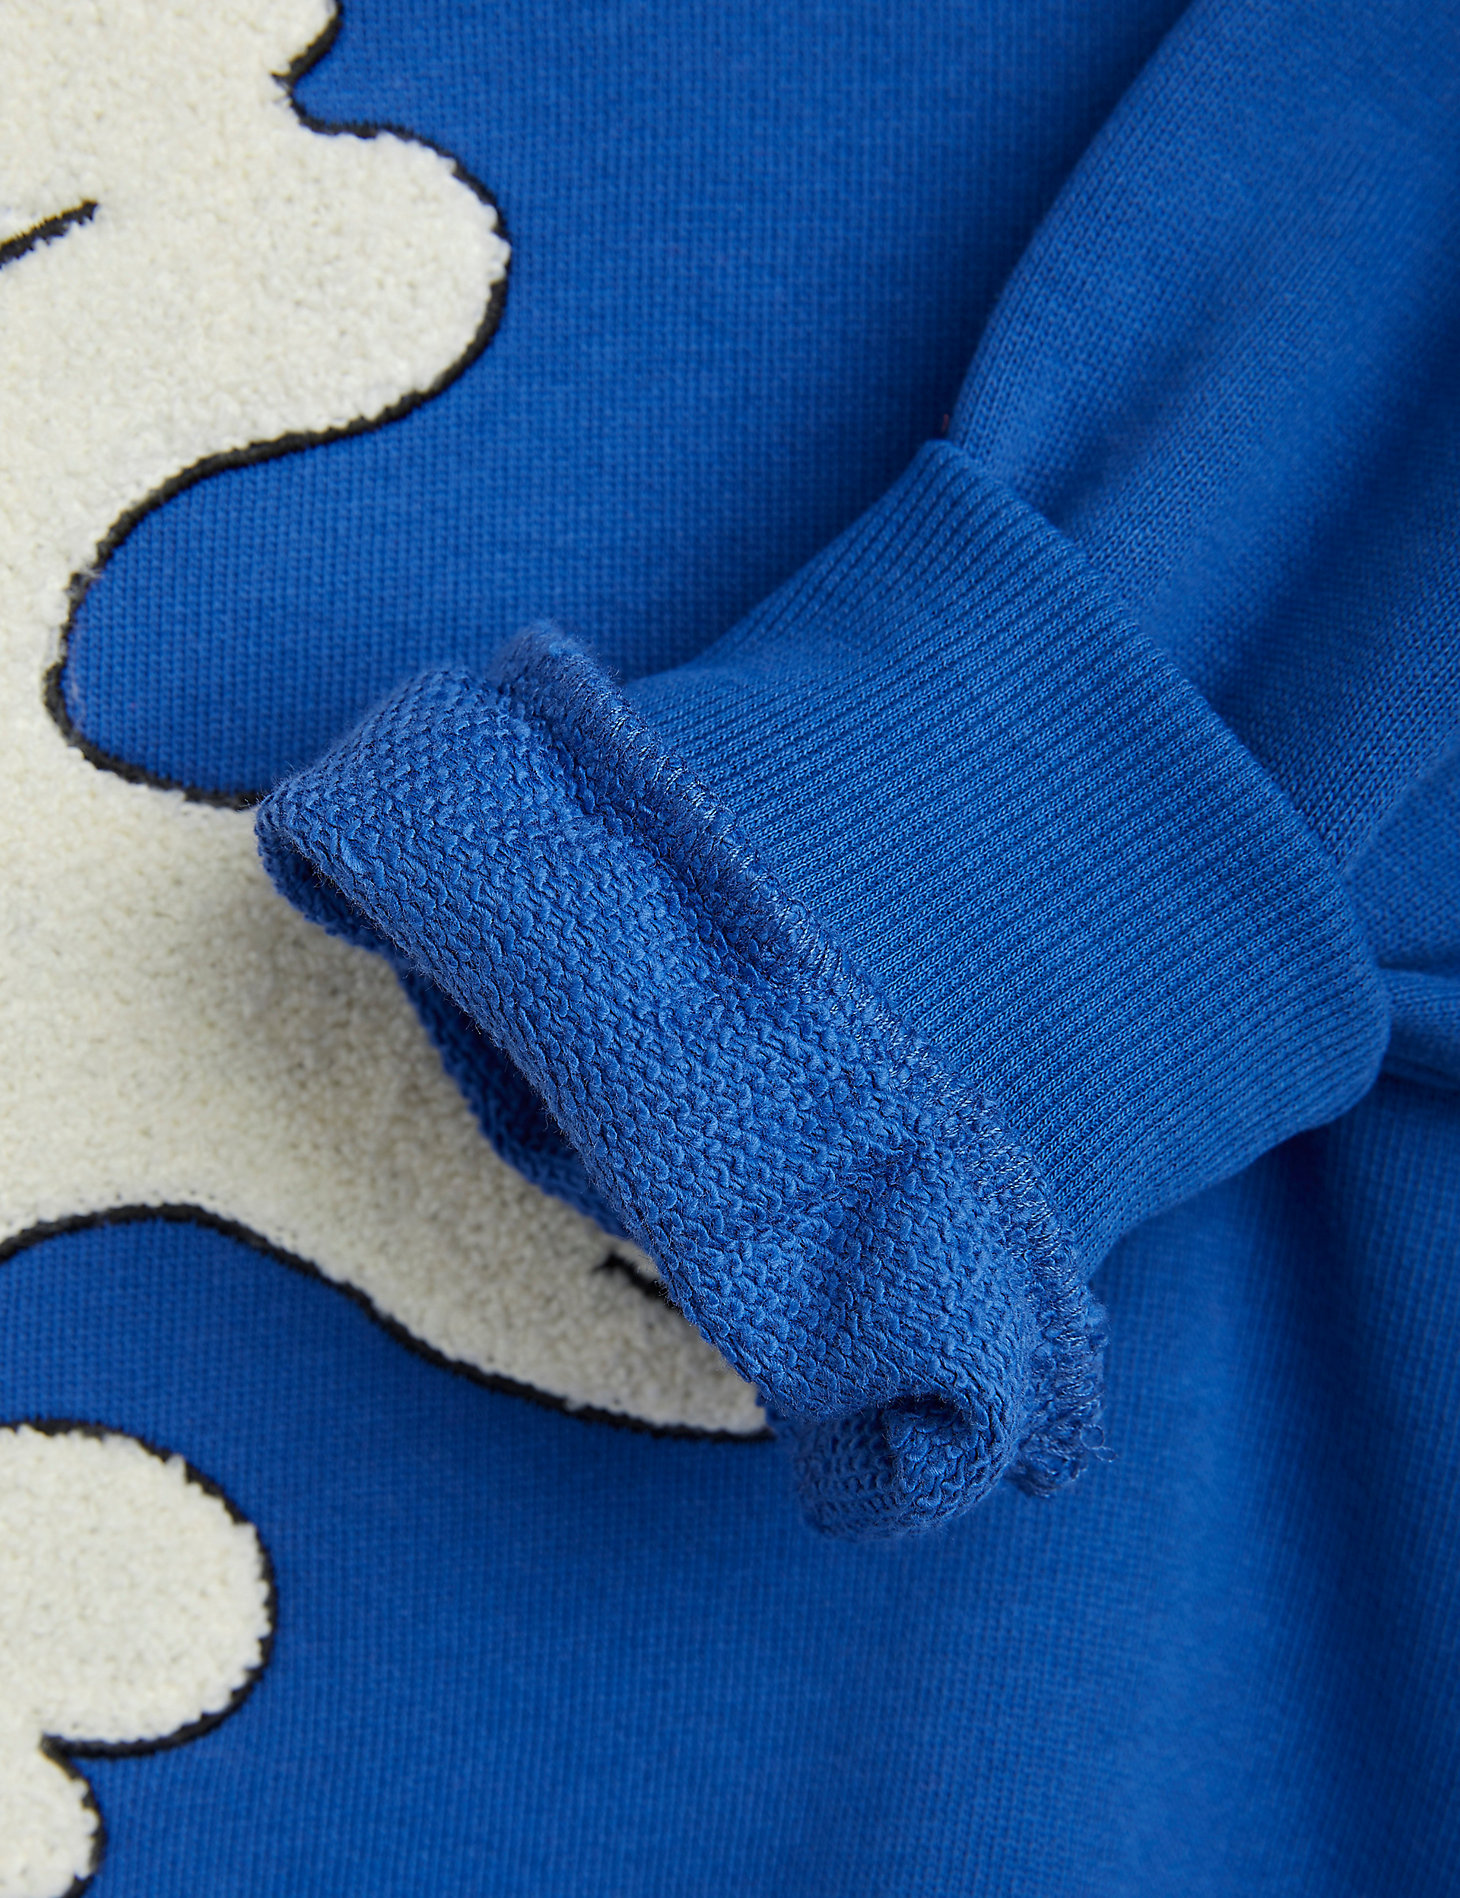 Mini Rodini x Wrangler Peace Dove Chenille Sweatshirt in Blue alternative view 3